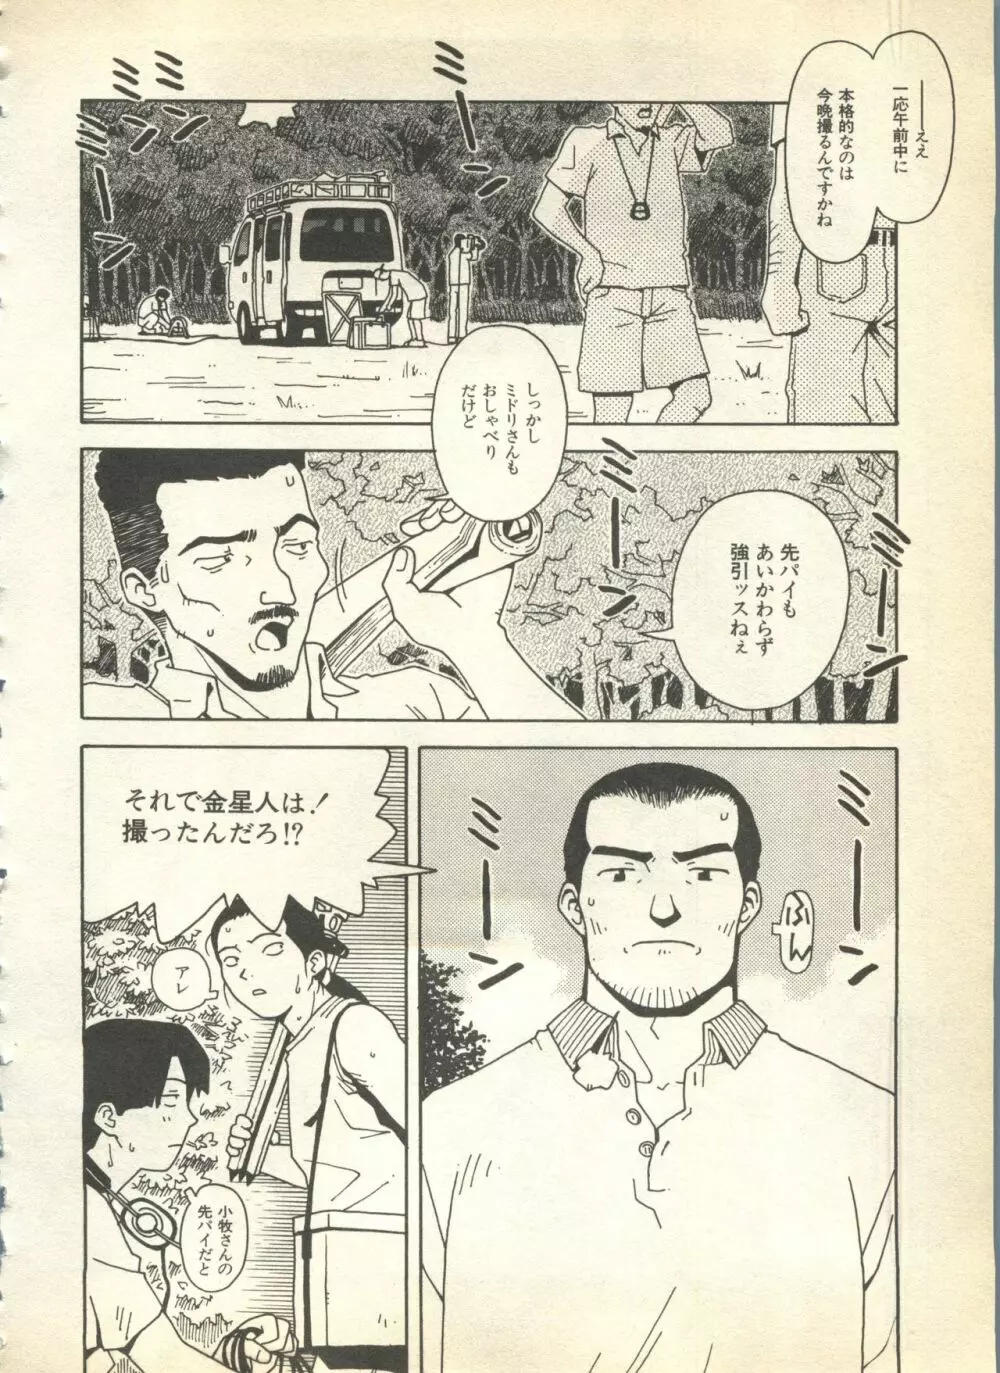 パイク Pai.kuu 1997 Dec 七 78ページ